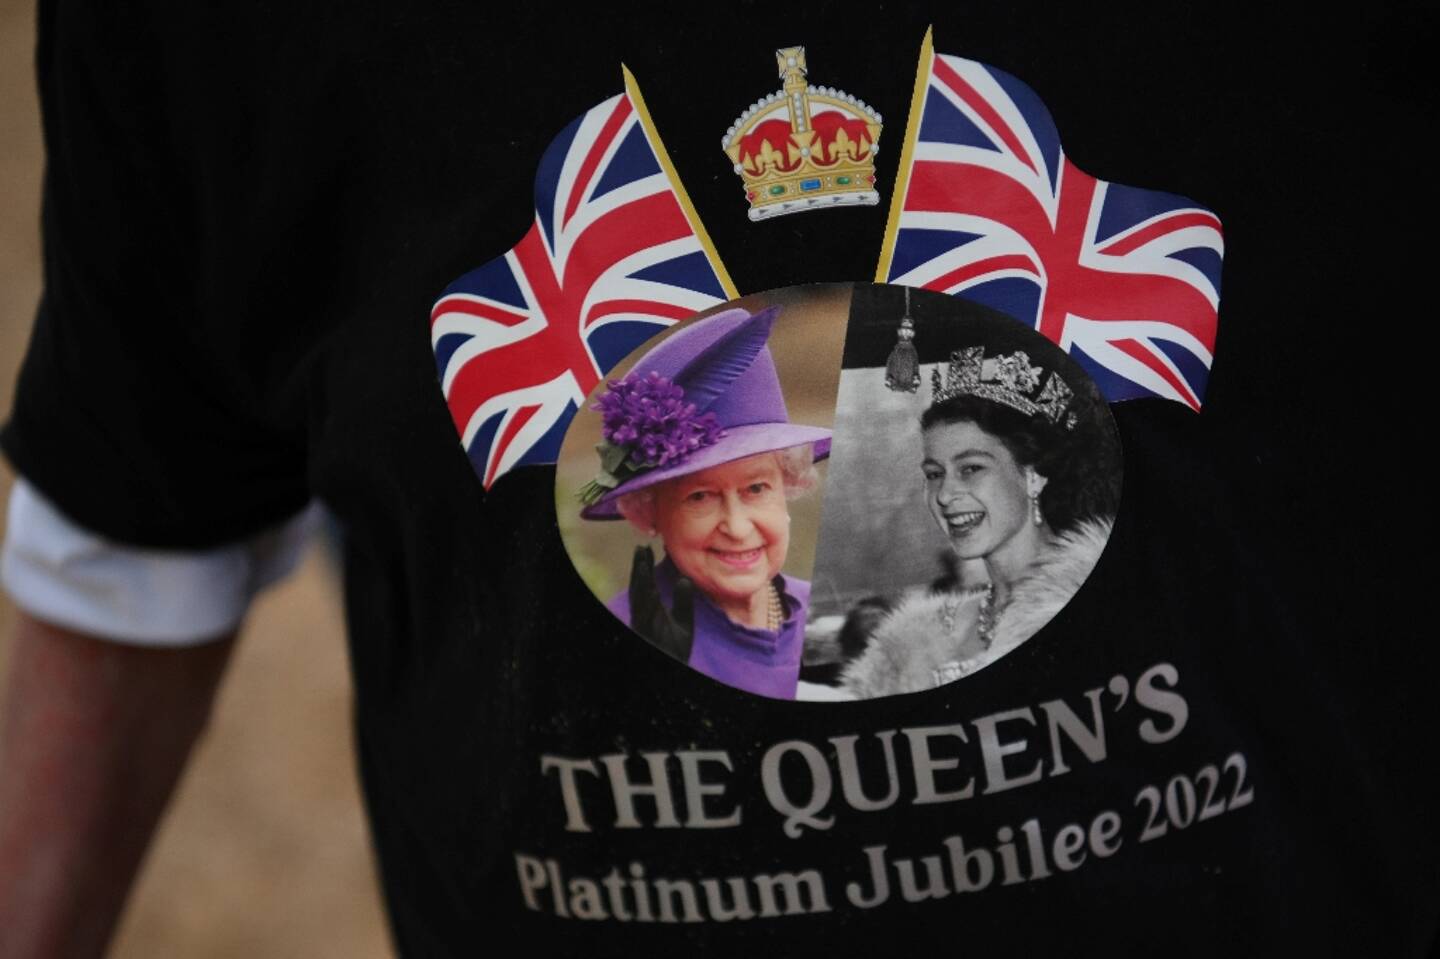 Des portraits de la reine Elizabeth II sur le t-shirt d'un visiteur, le 1er juin 2022 à Londres